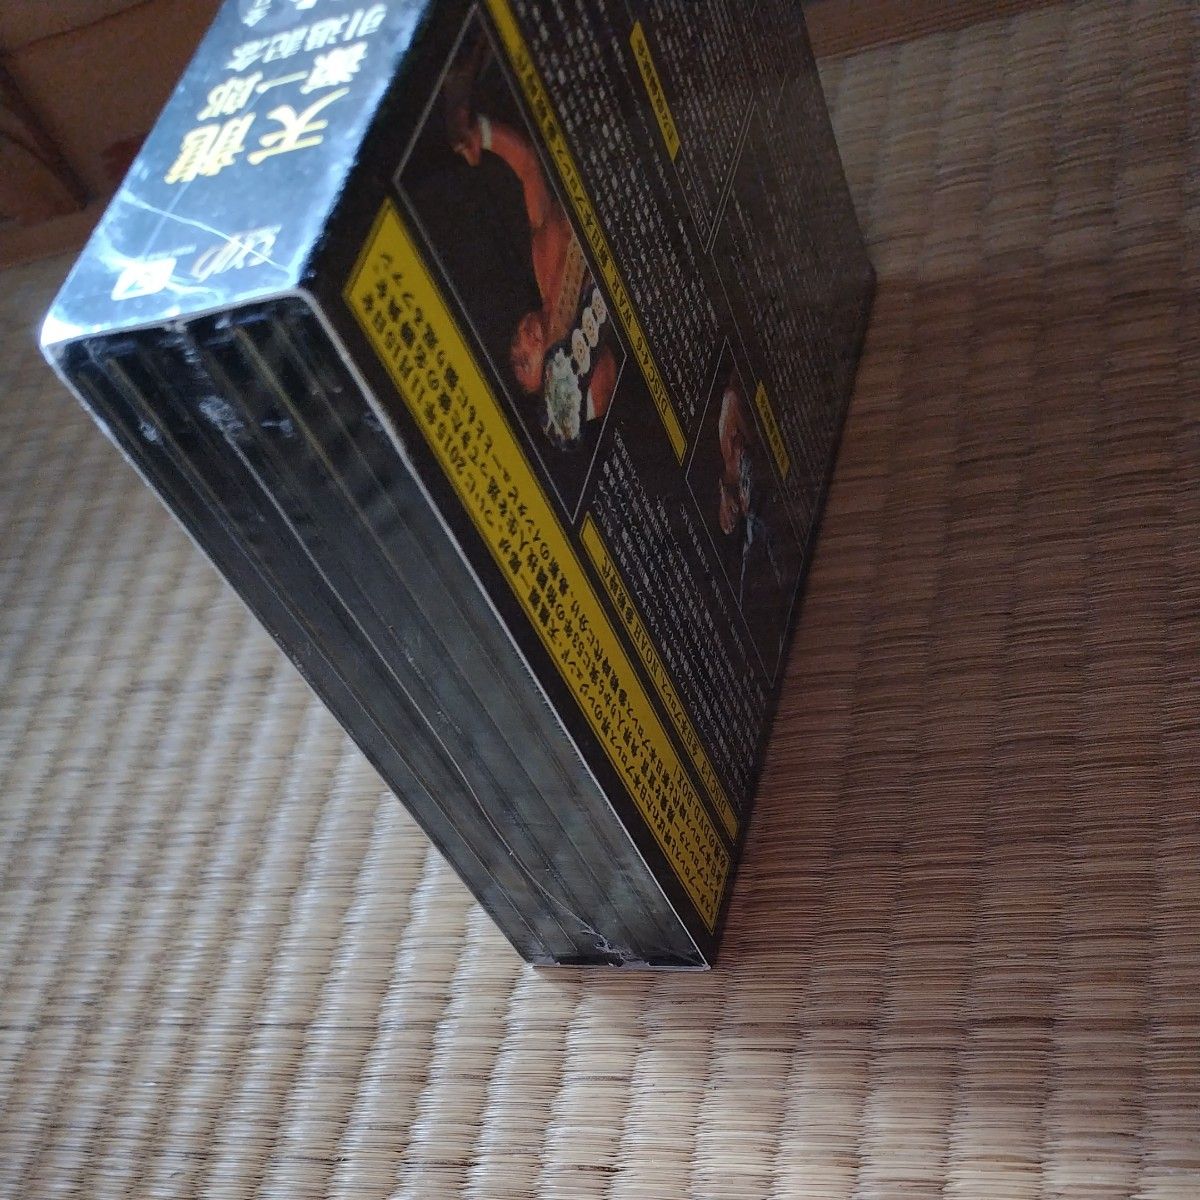 未使用品天龍源一郎引退記念 全日本プロレス&新日本プロレス激闘の軌跡 DVD-BOX 天龍源一郎